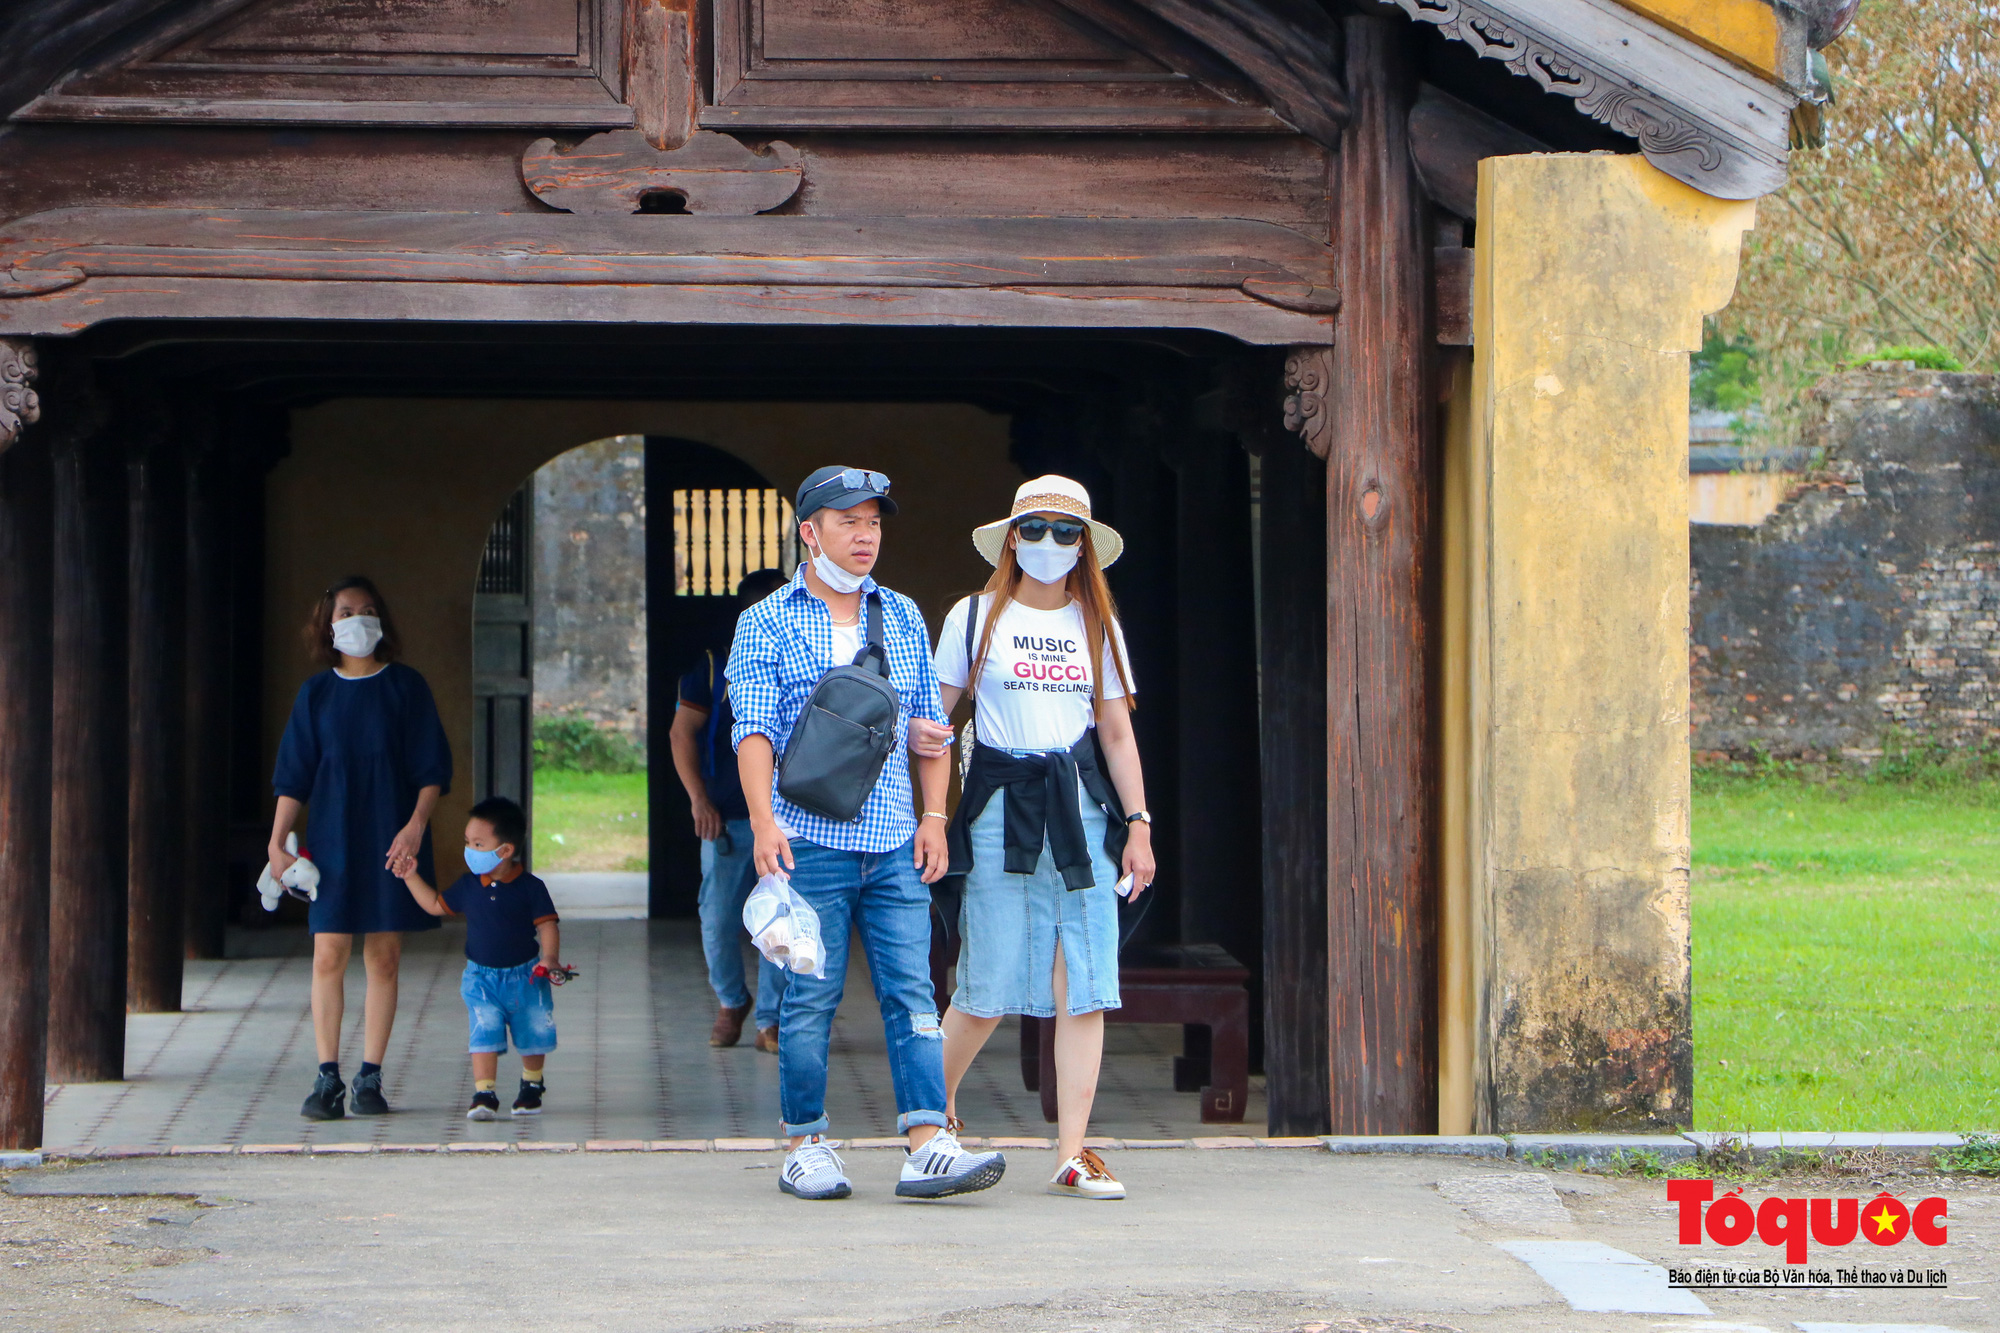 Thừa Thiên Huế đón đoàn khách gần 600 người theo hình thức Team building - Ảnh 16.